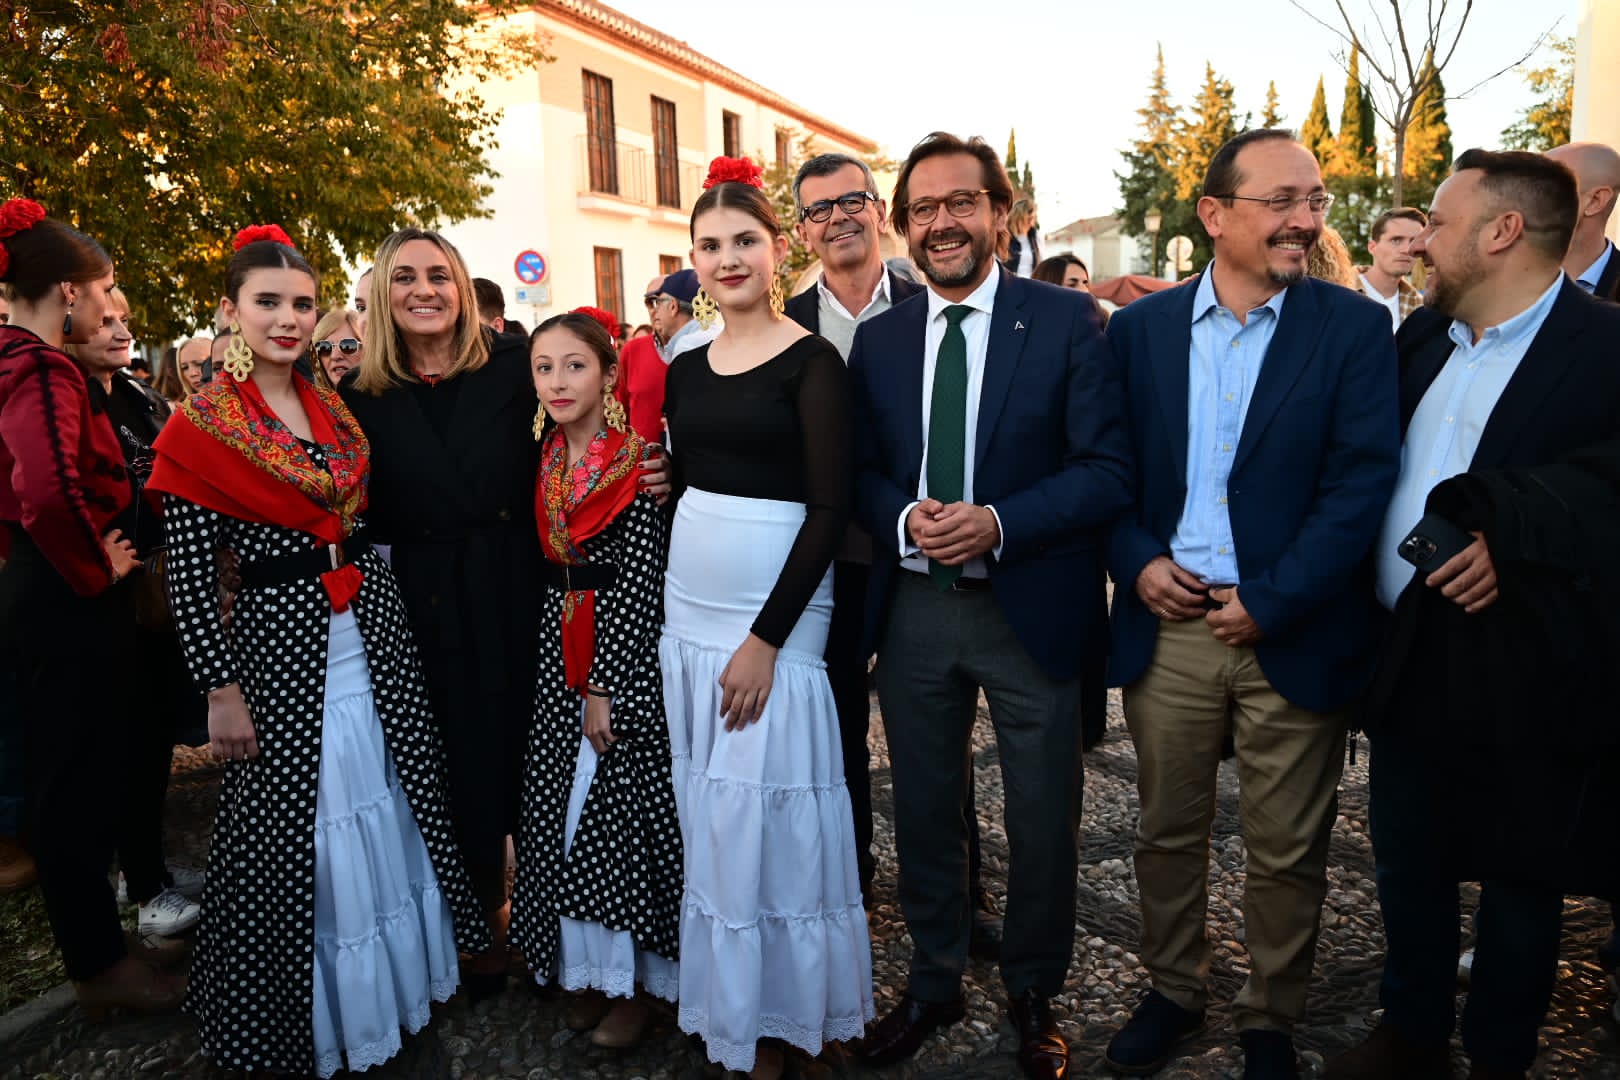 Con la puesta de sol desde el Mirador de San Nicolás y La Alhambra, Granada conmemora el día del Flamenco 